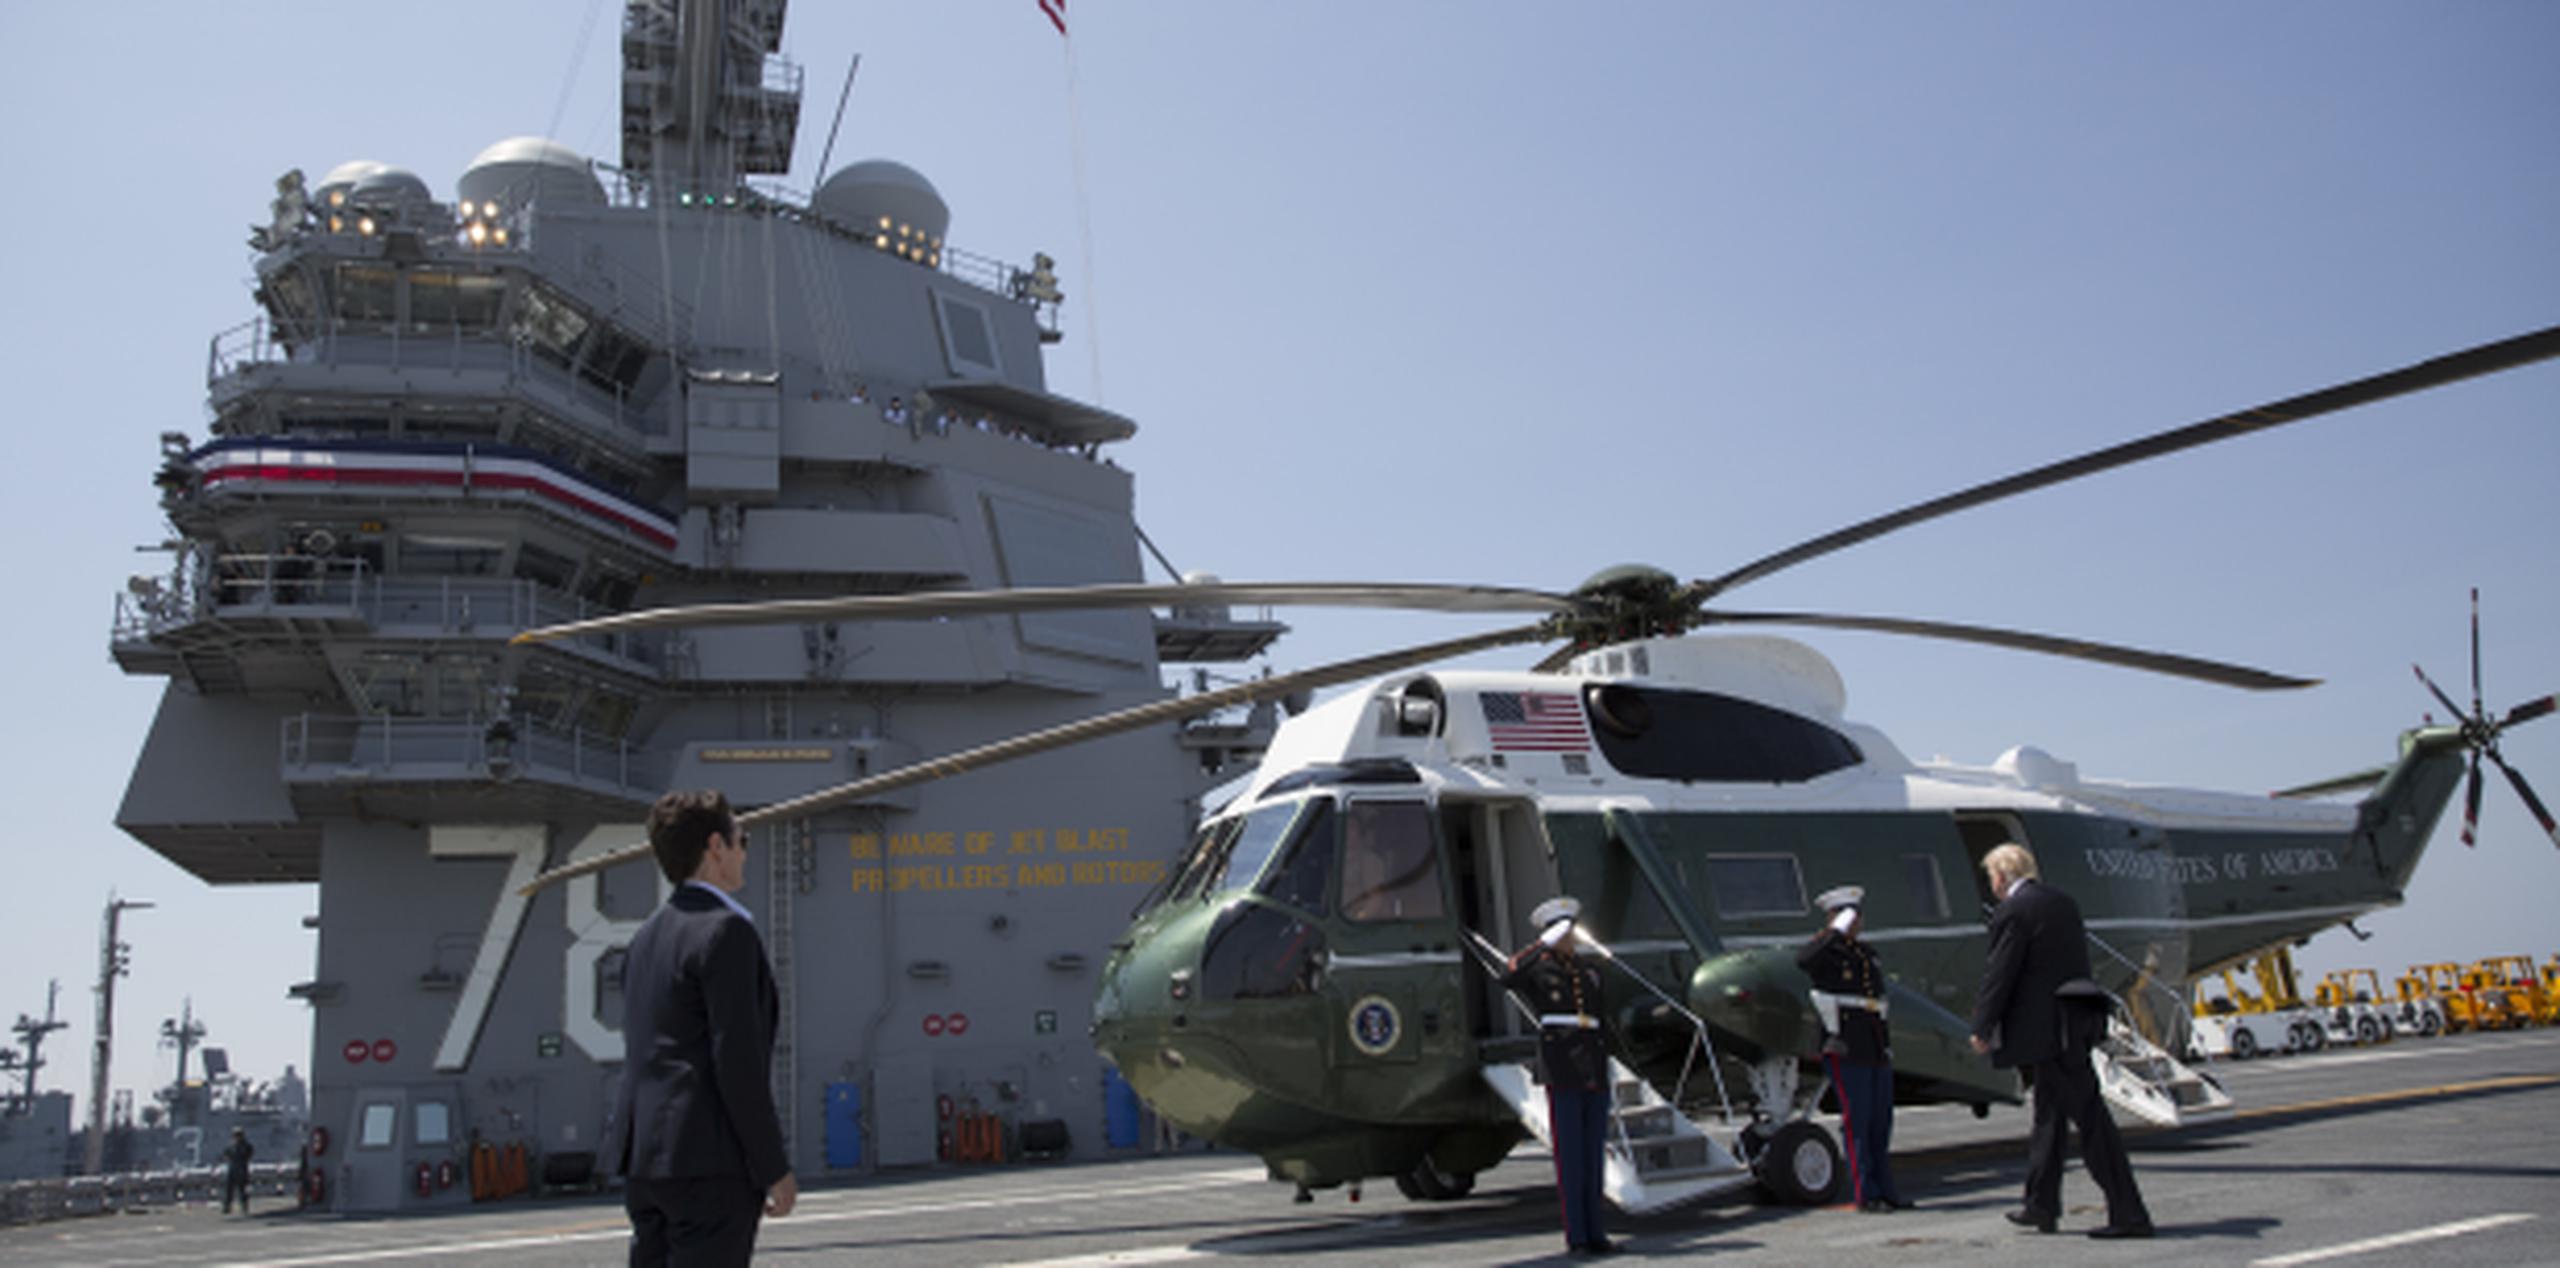 El presidente Donald Trump camina hacia el helicóptero presidencial sobre la cubierta del recién inaugurado portaaviones USS Gerald R. Ford. (AP/Carolyn Kaster)
